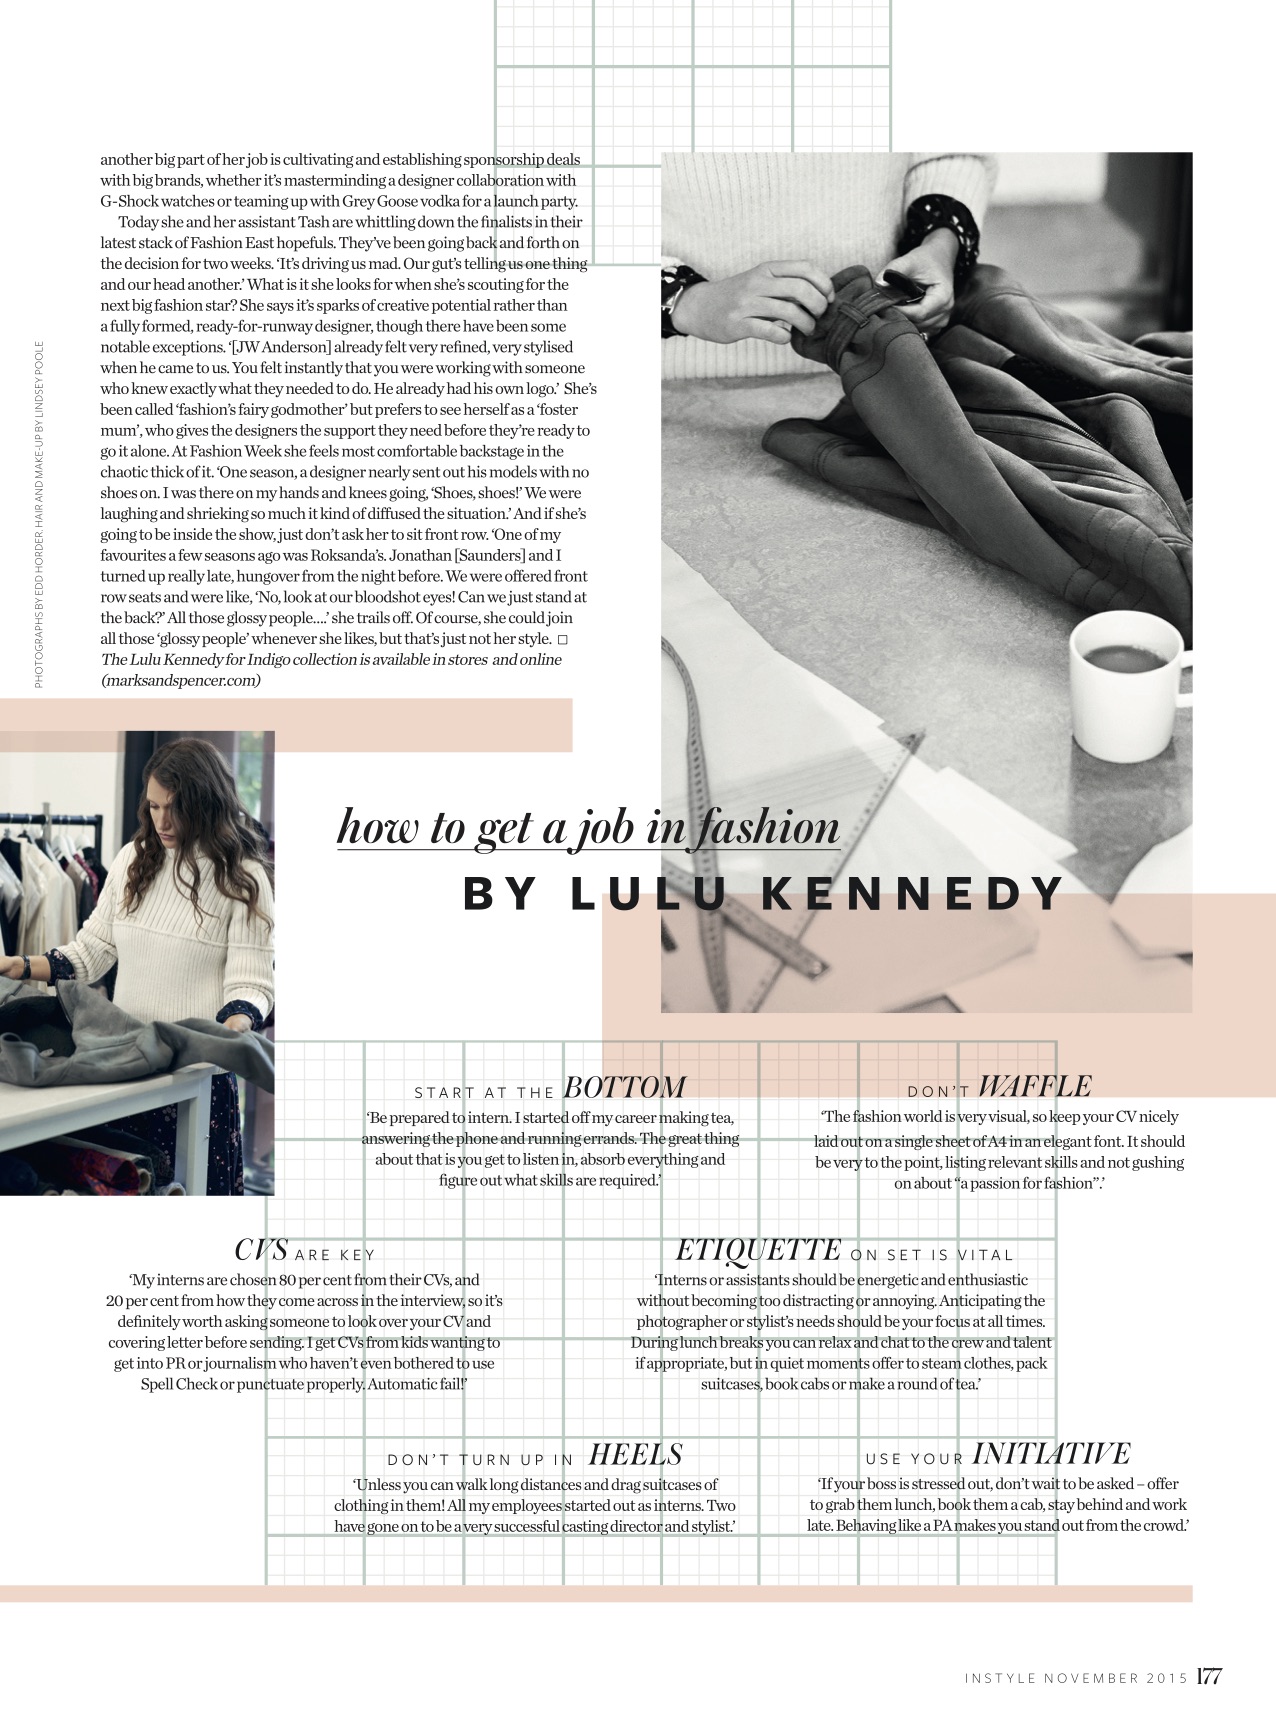 Lulu Kennedy 3 copy.jpg